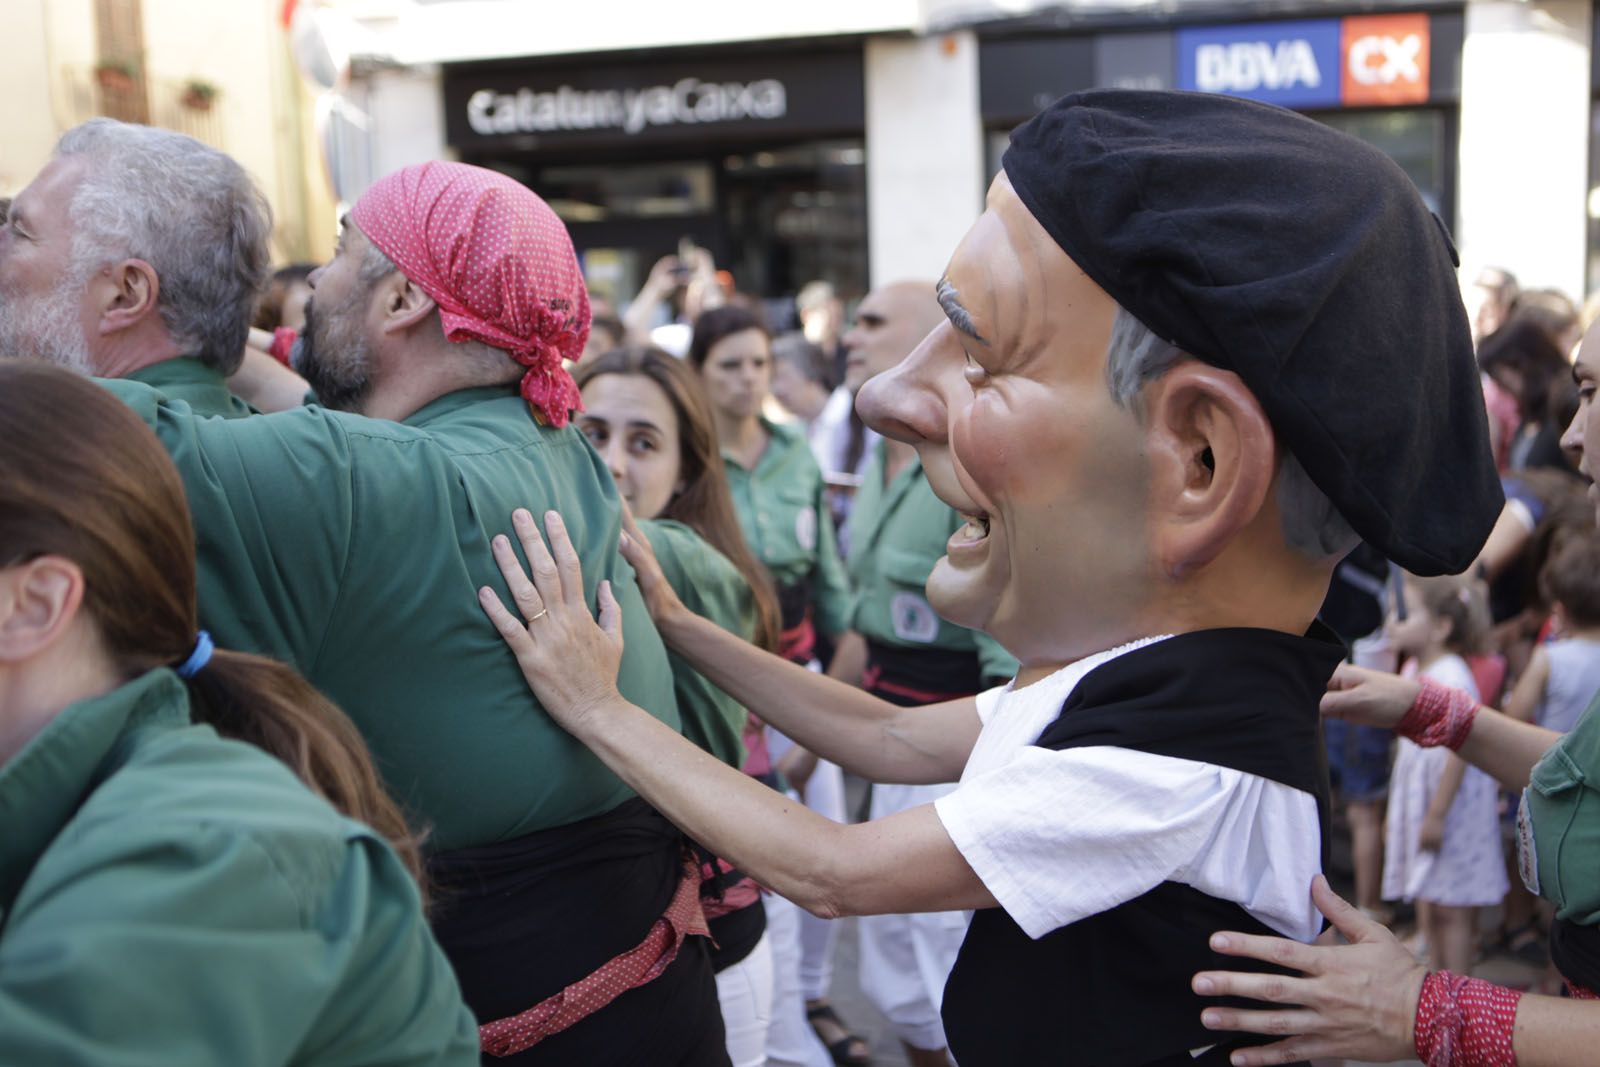 Seguici de Sant Pere i esclat de Festa Major FOTO: Artur Ribera